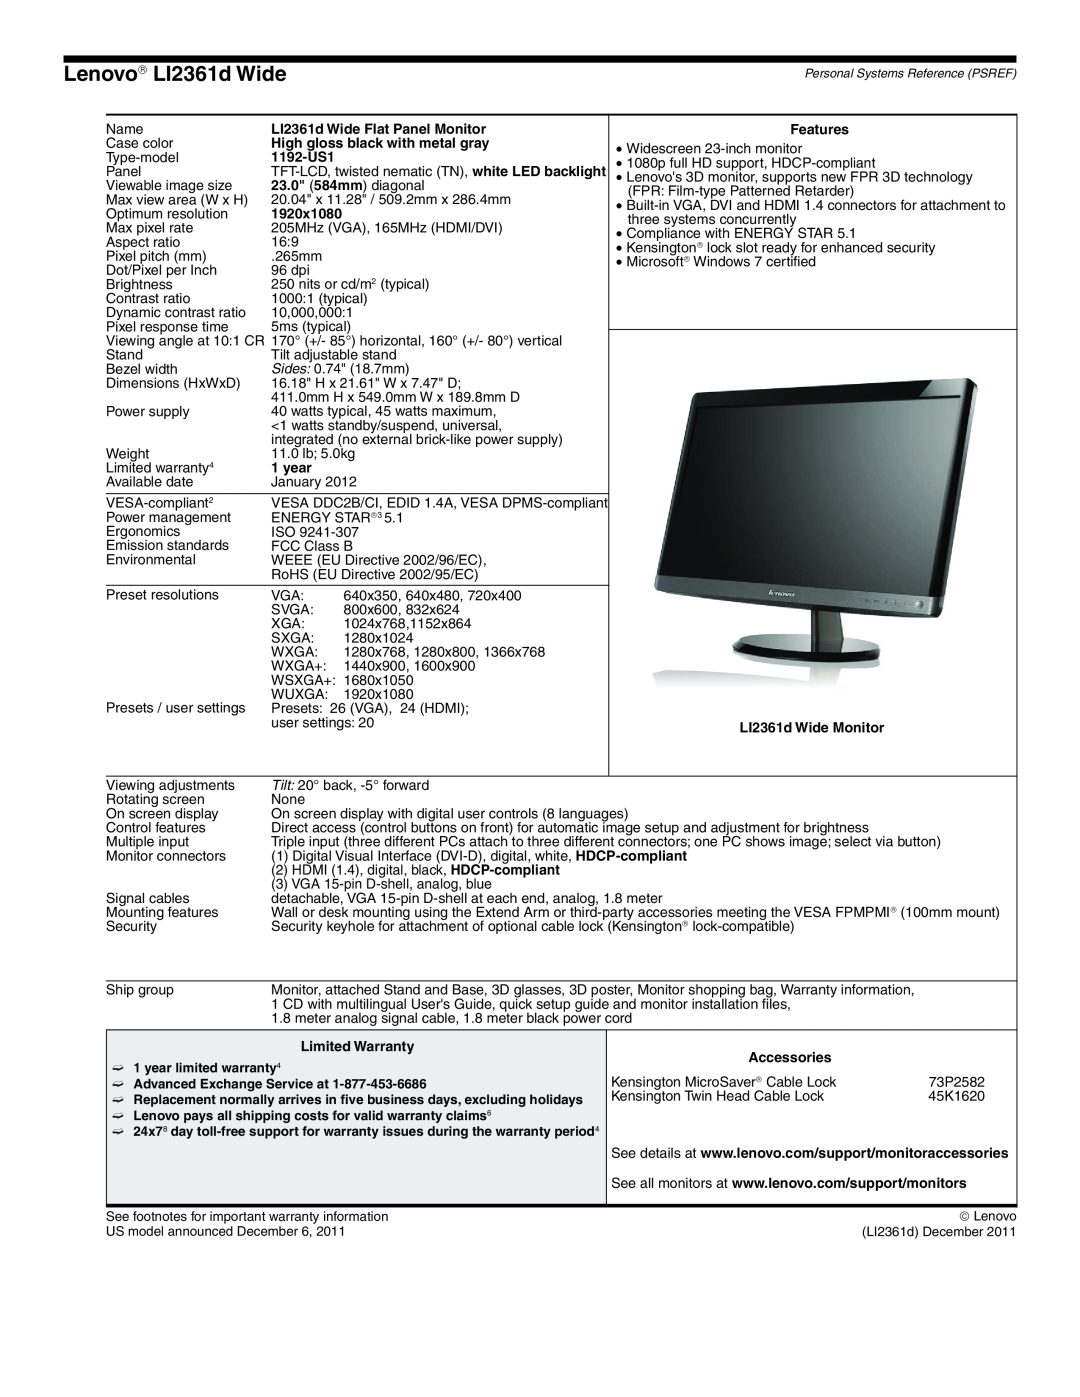 Lenovo L2363D manual Lenovo→ LI2361d Wide 